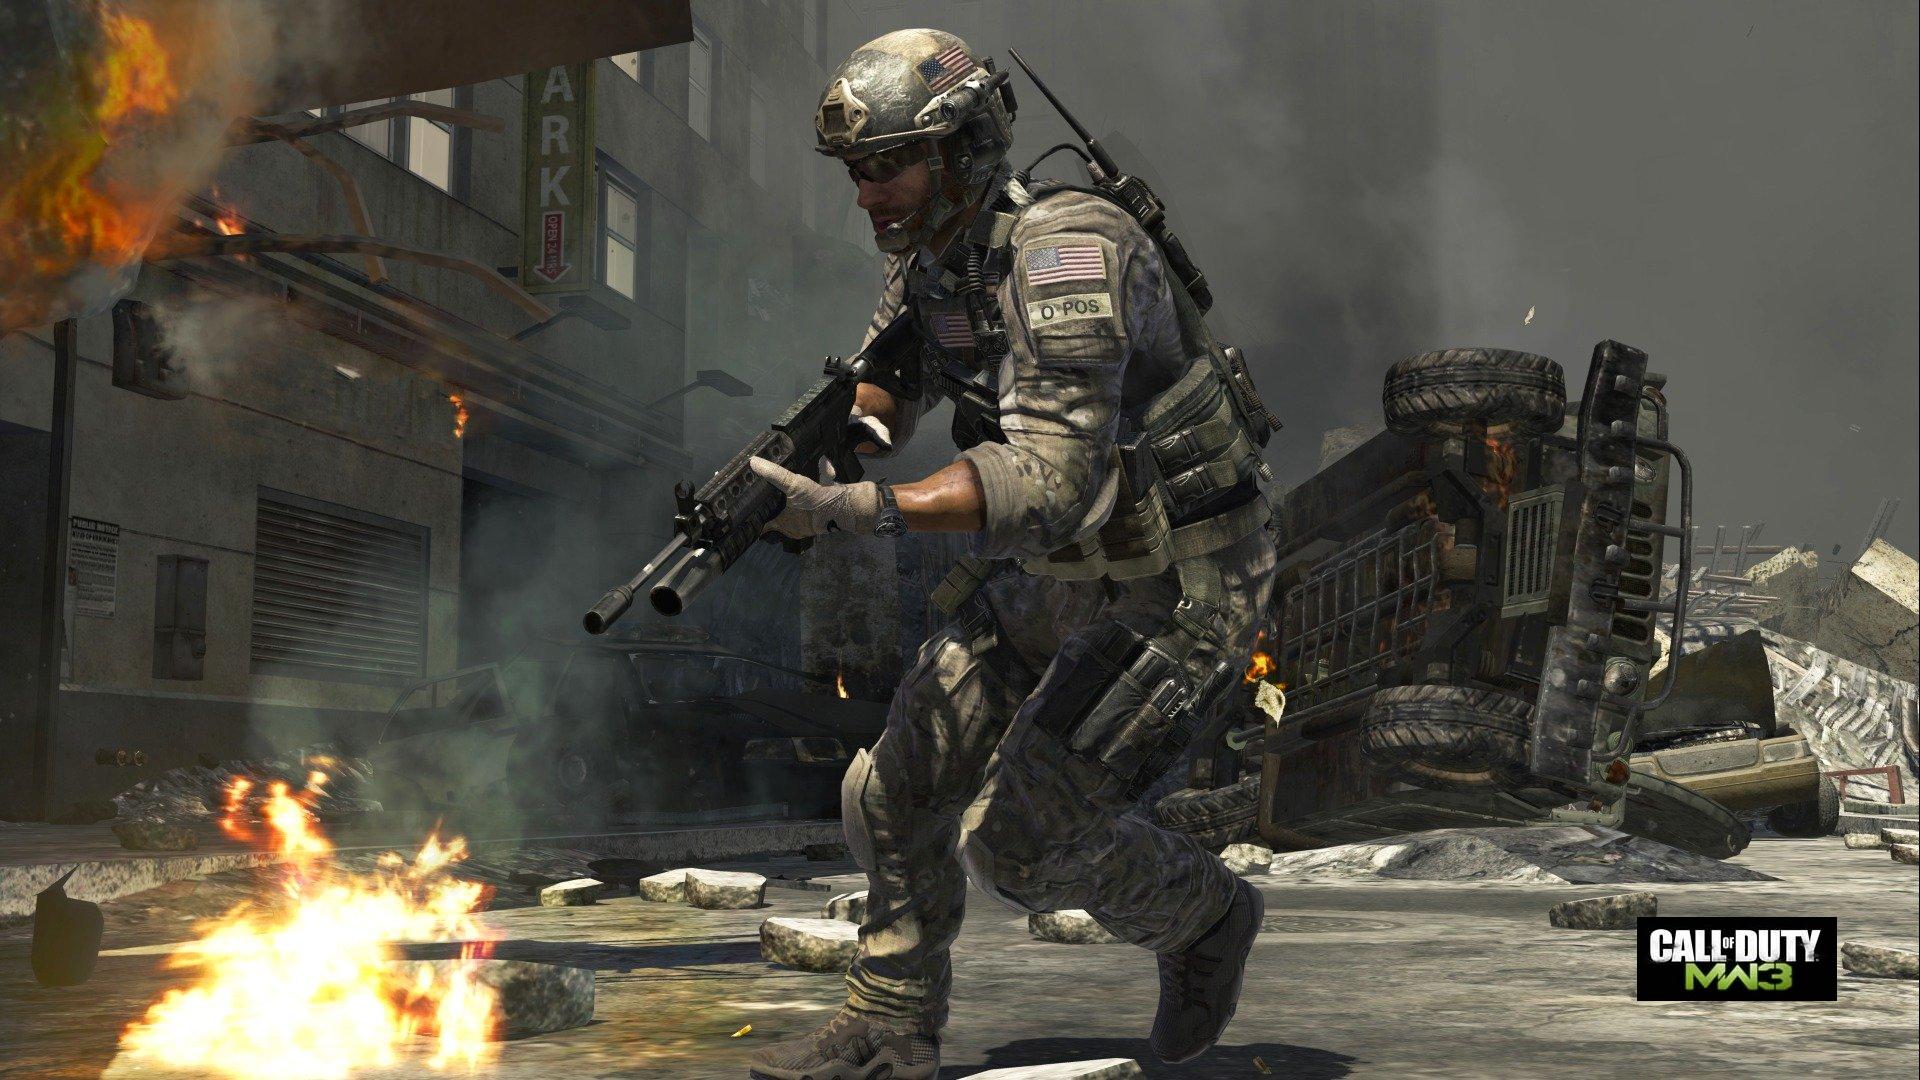 Kaufen Call of Duty Modern Warfare 3 Uncut PC Spiel ...
